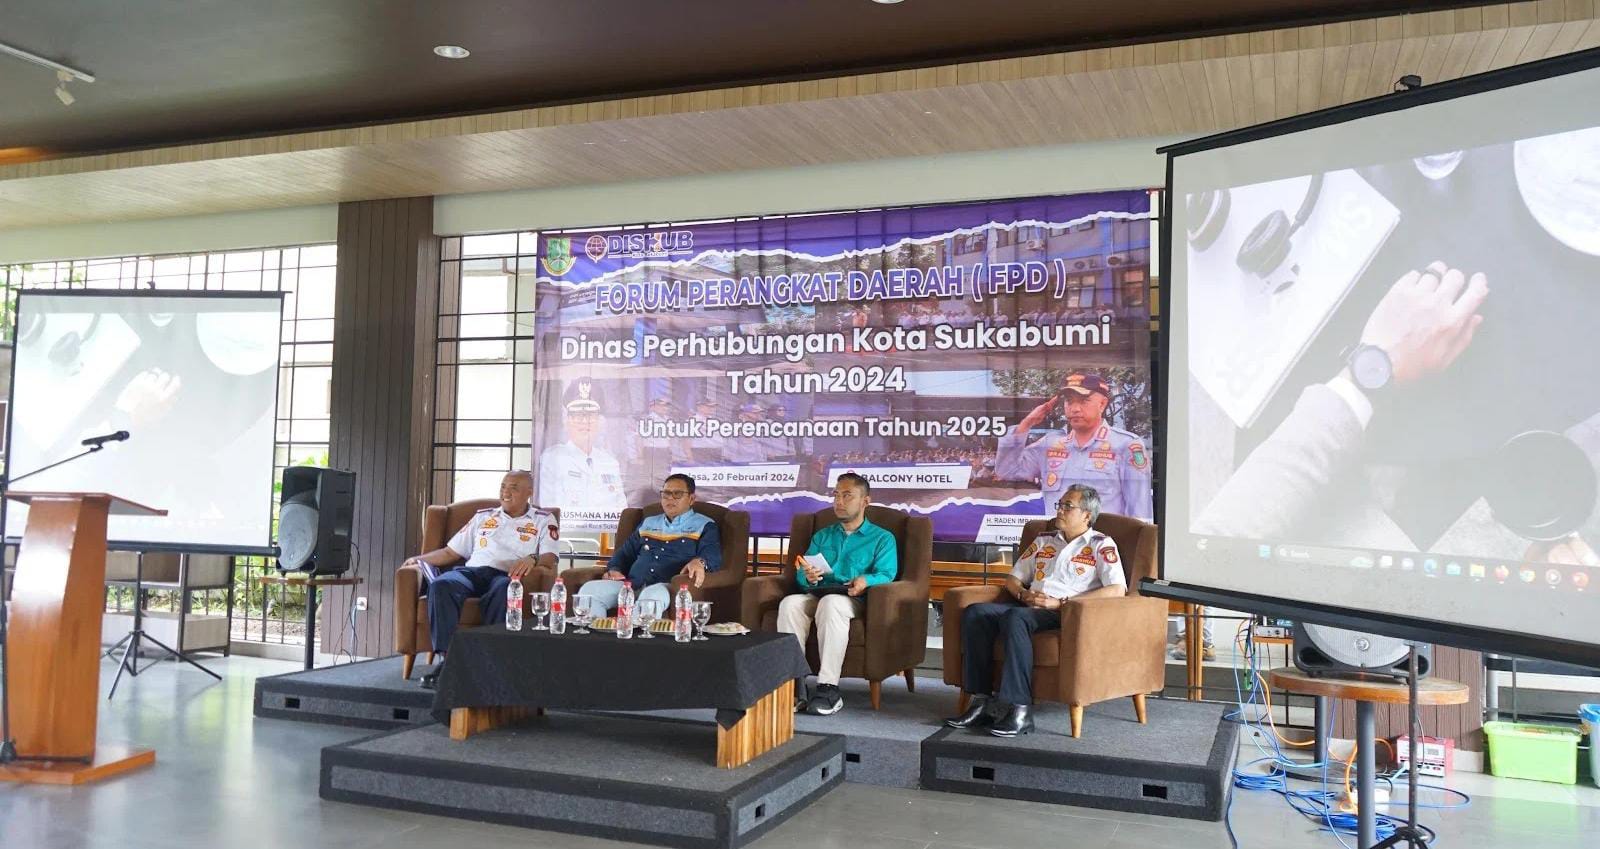 Dinas Perhubungan (Dishub) Kota Sukabumi menggelar Forum Perangkat Daerah (FPD) untuk penyusunan Rencana Kerja Perangkat Daerah (RKPD) 2025, di salah satu hotel di Jalan Selabintana, pada Selasa, 20 Februari 2024. Foto: Dokpim Kota Sukabumi.